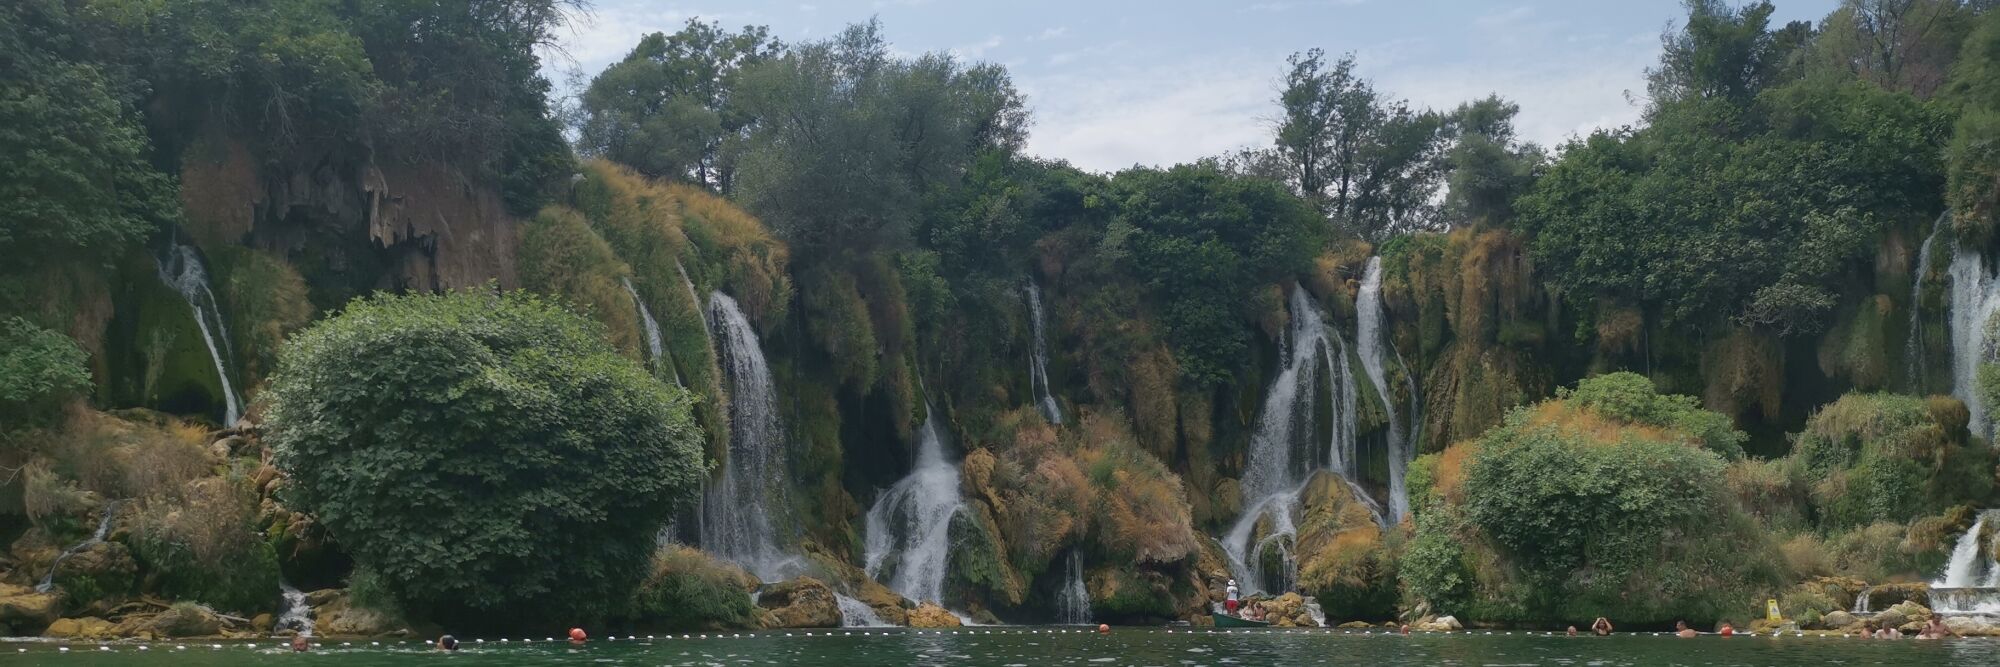 Wodospady Kravica - tropikalna oaza Hercegowiny